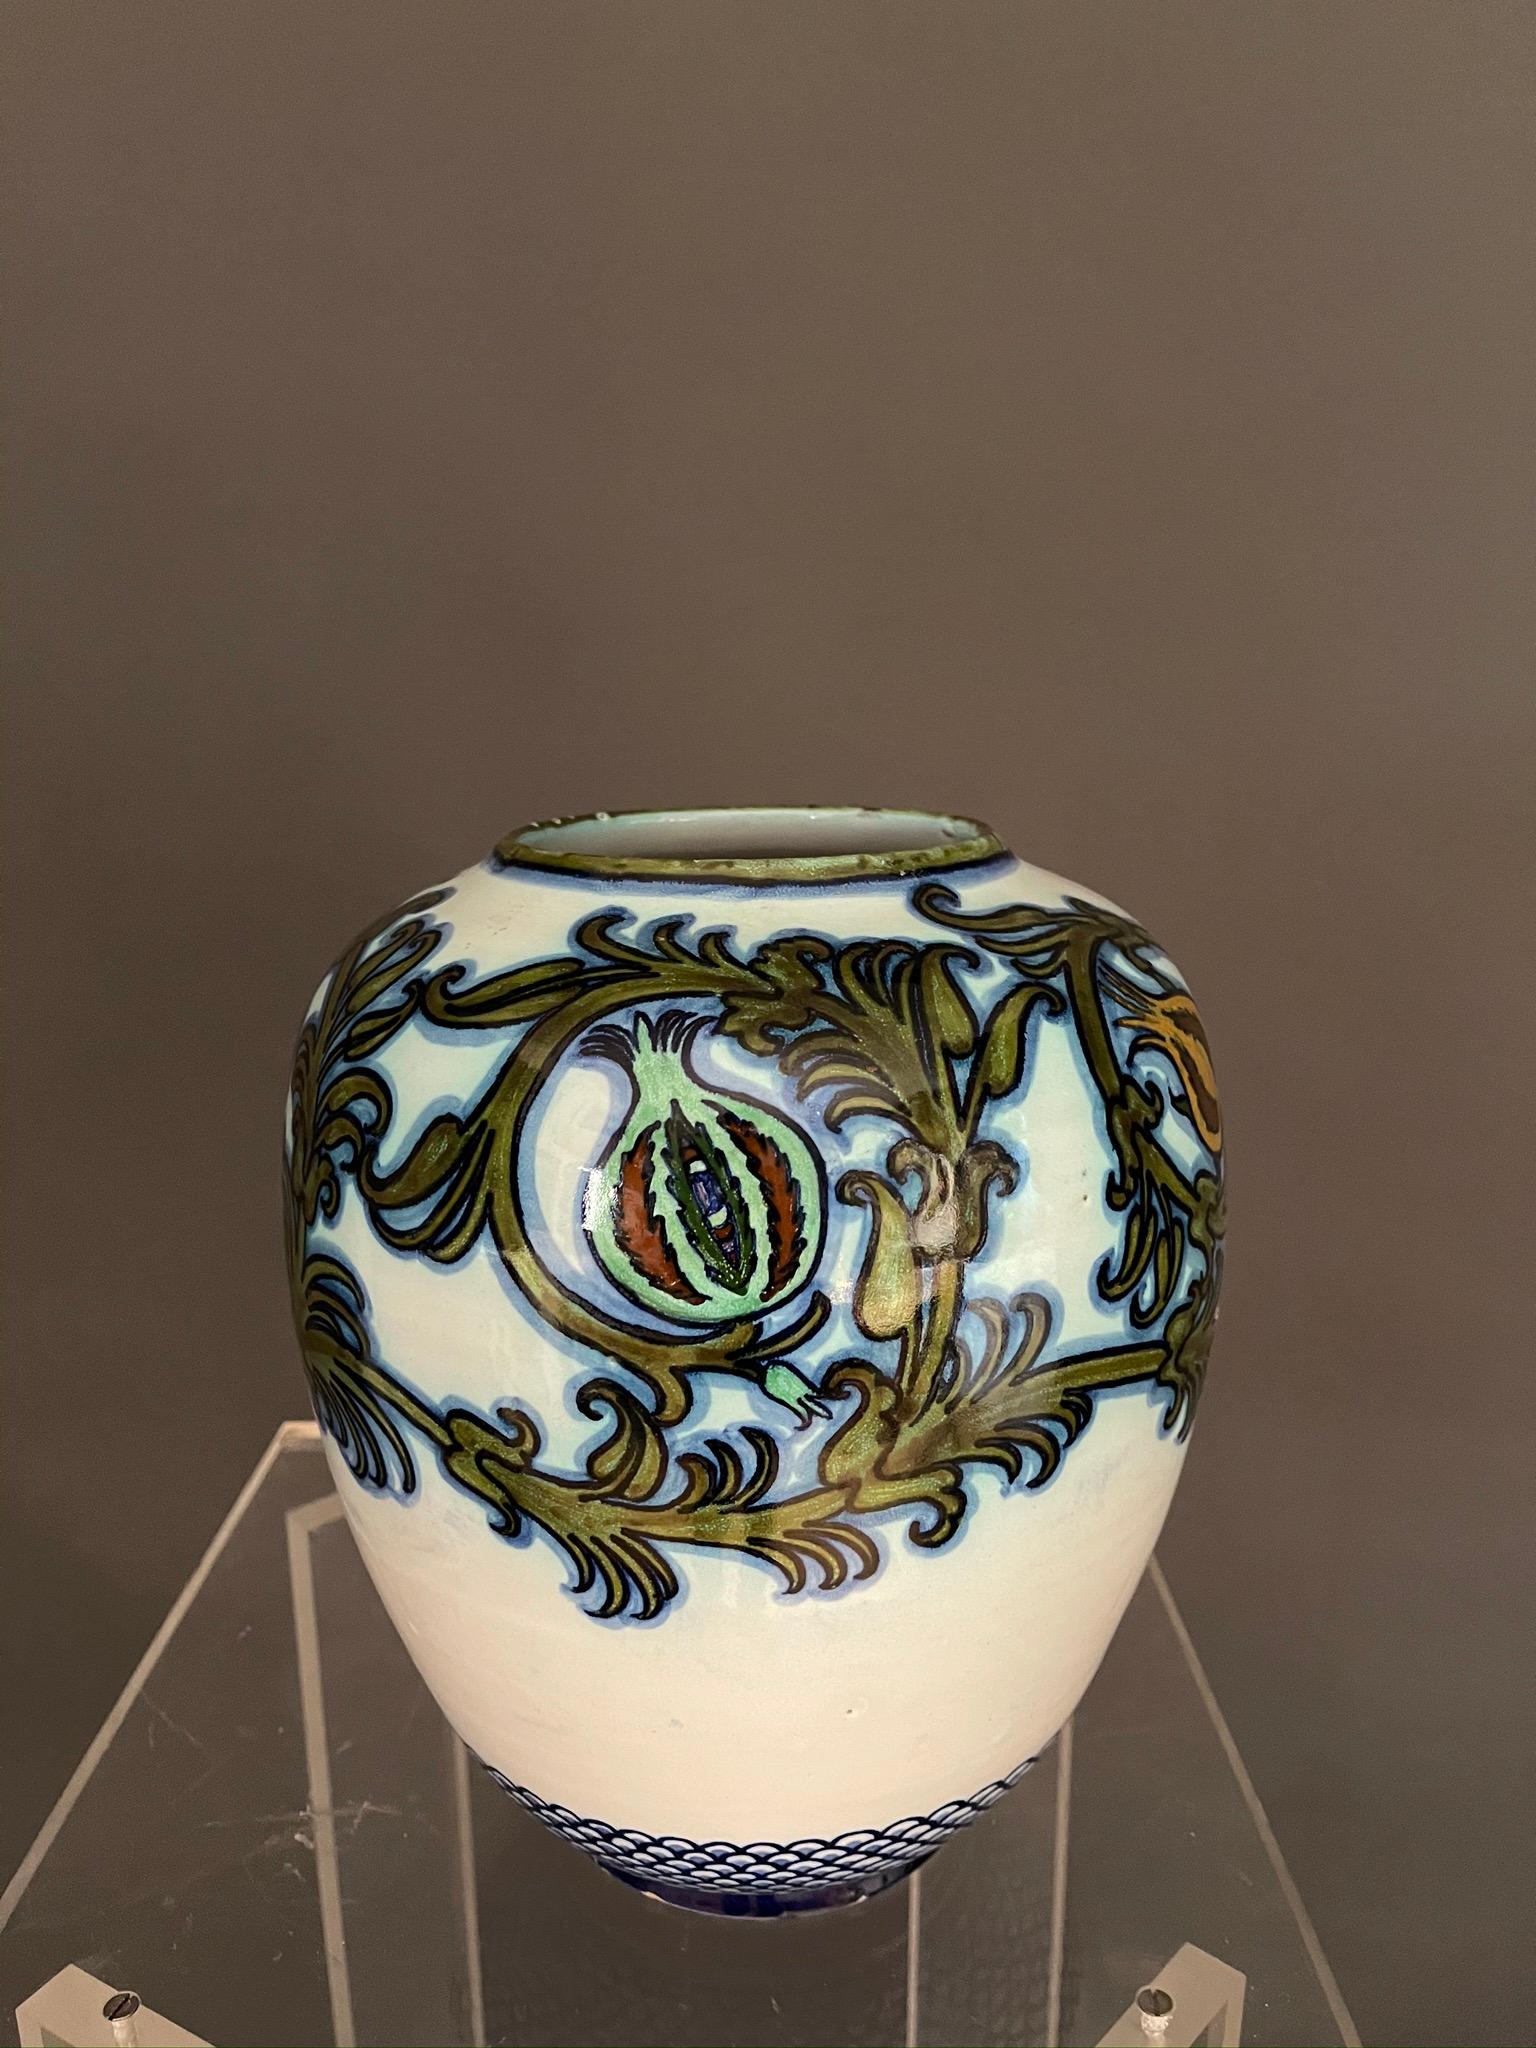 Die italienischen Künstler Pietro Melandri und Paolo Zoli glasierten eine runde Majolika-Vase für 